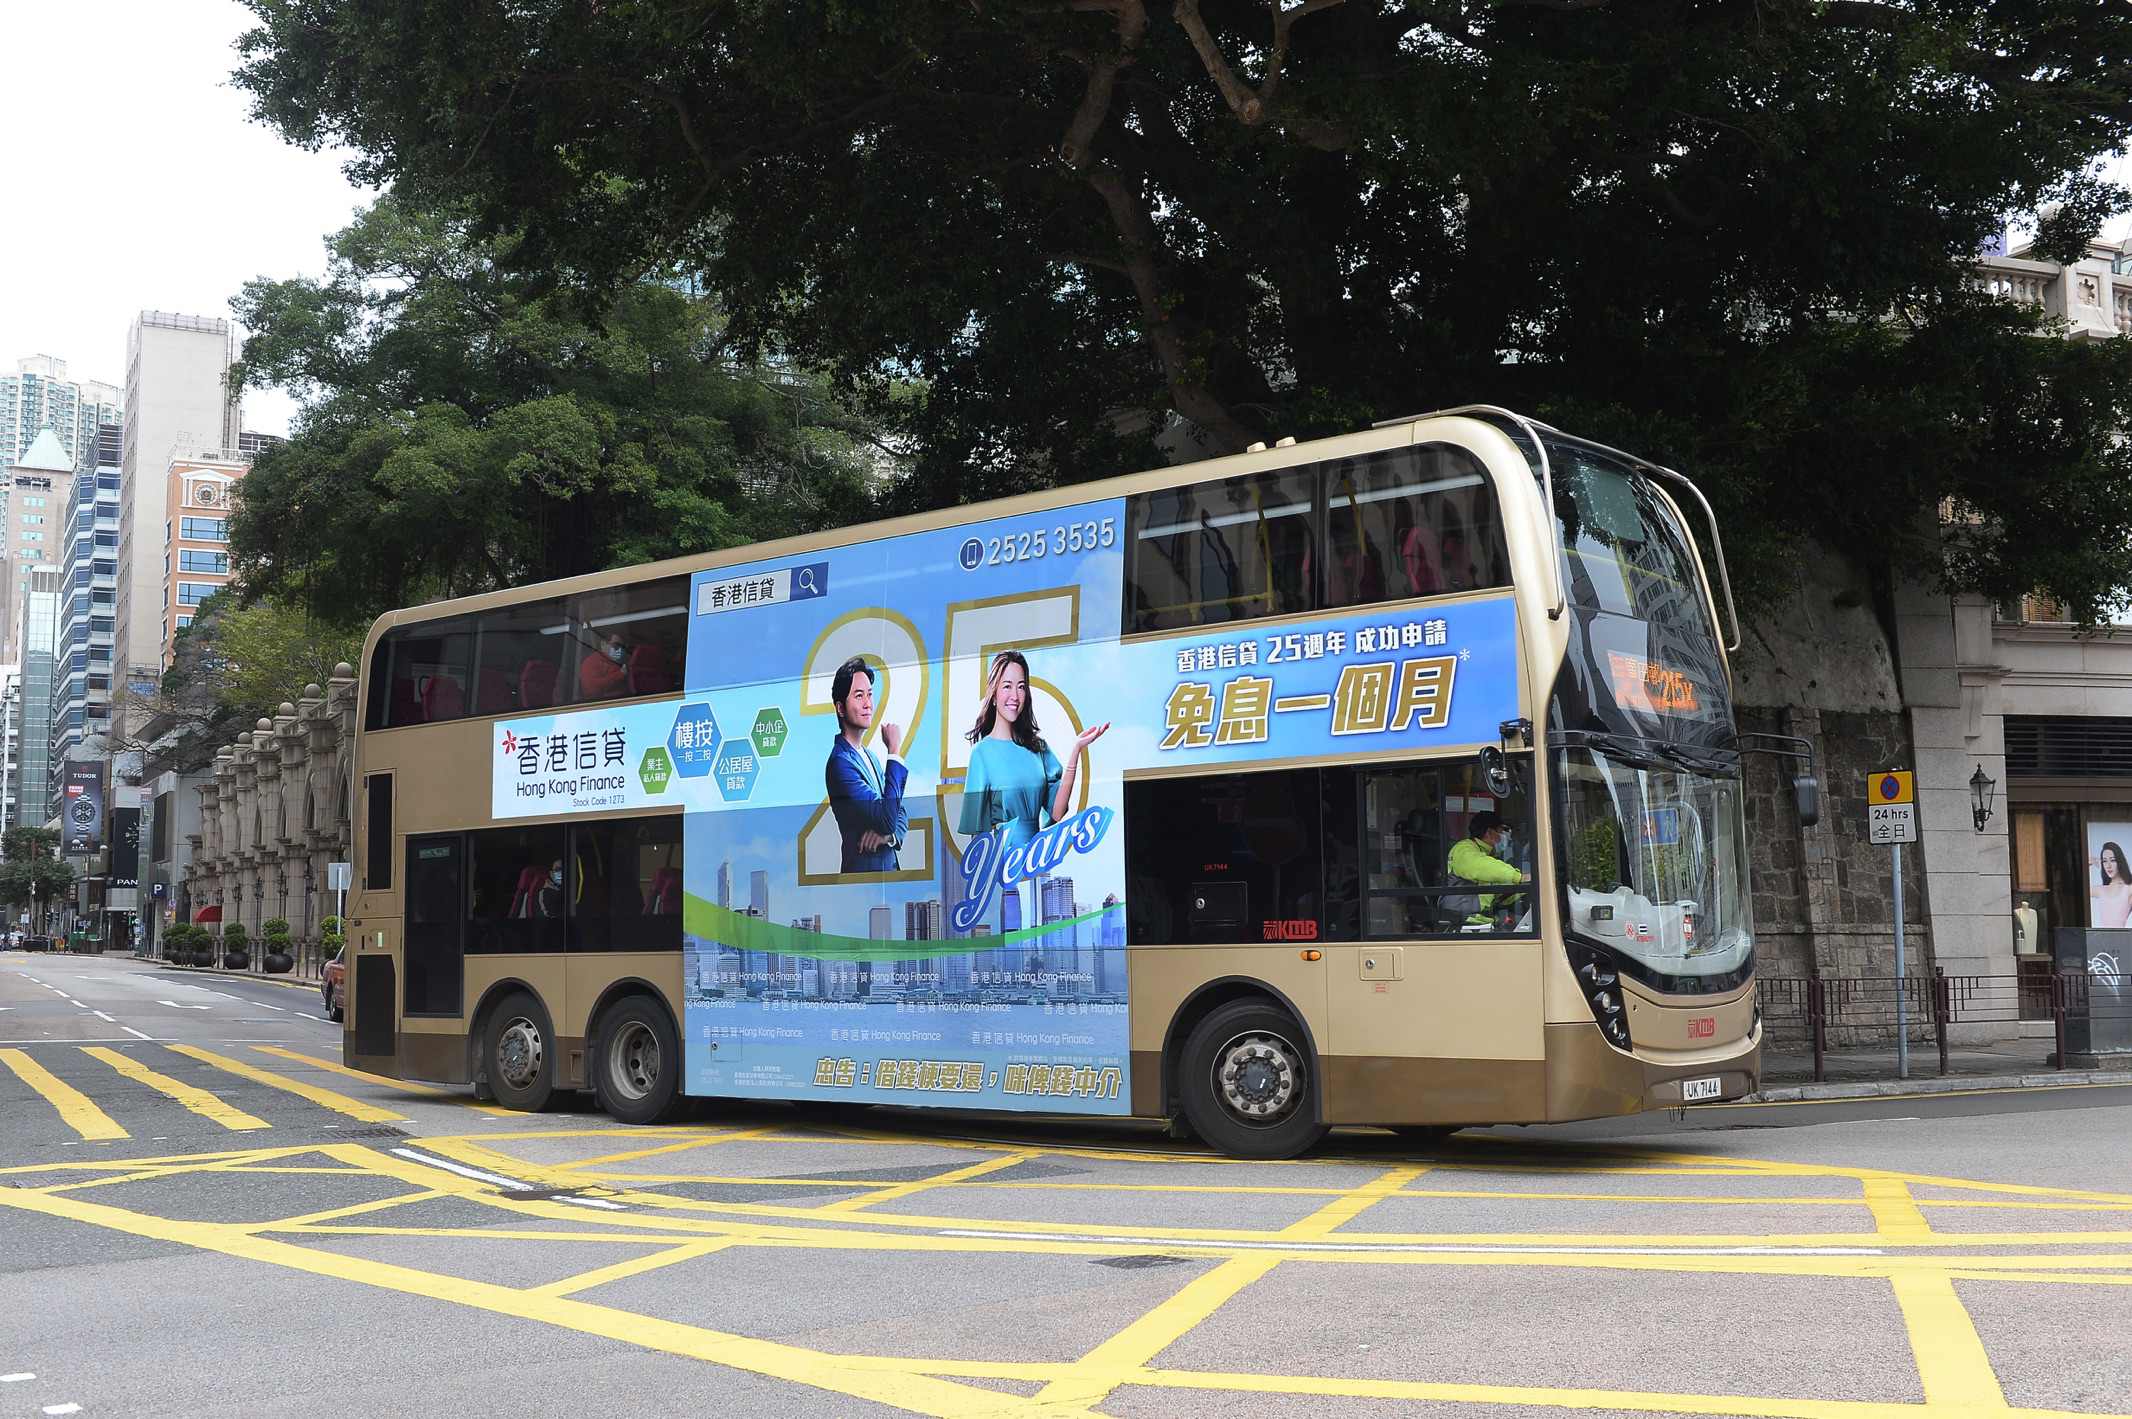 Bus：「Hong Kong Finance」Advertisement